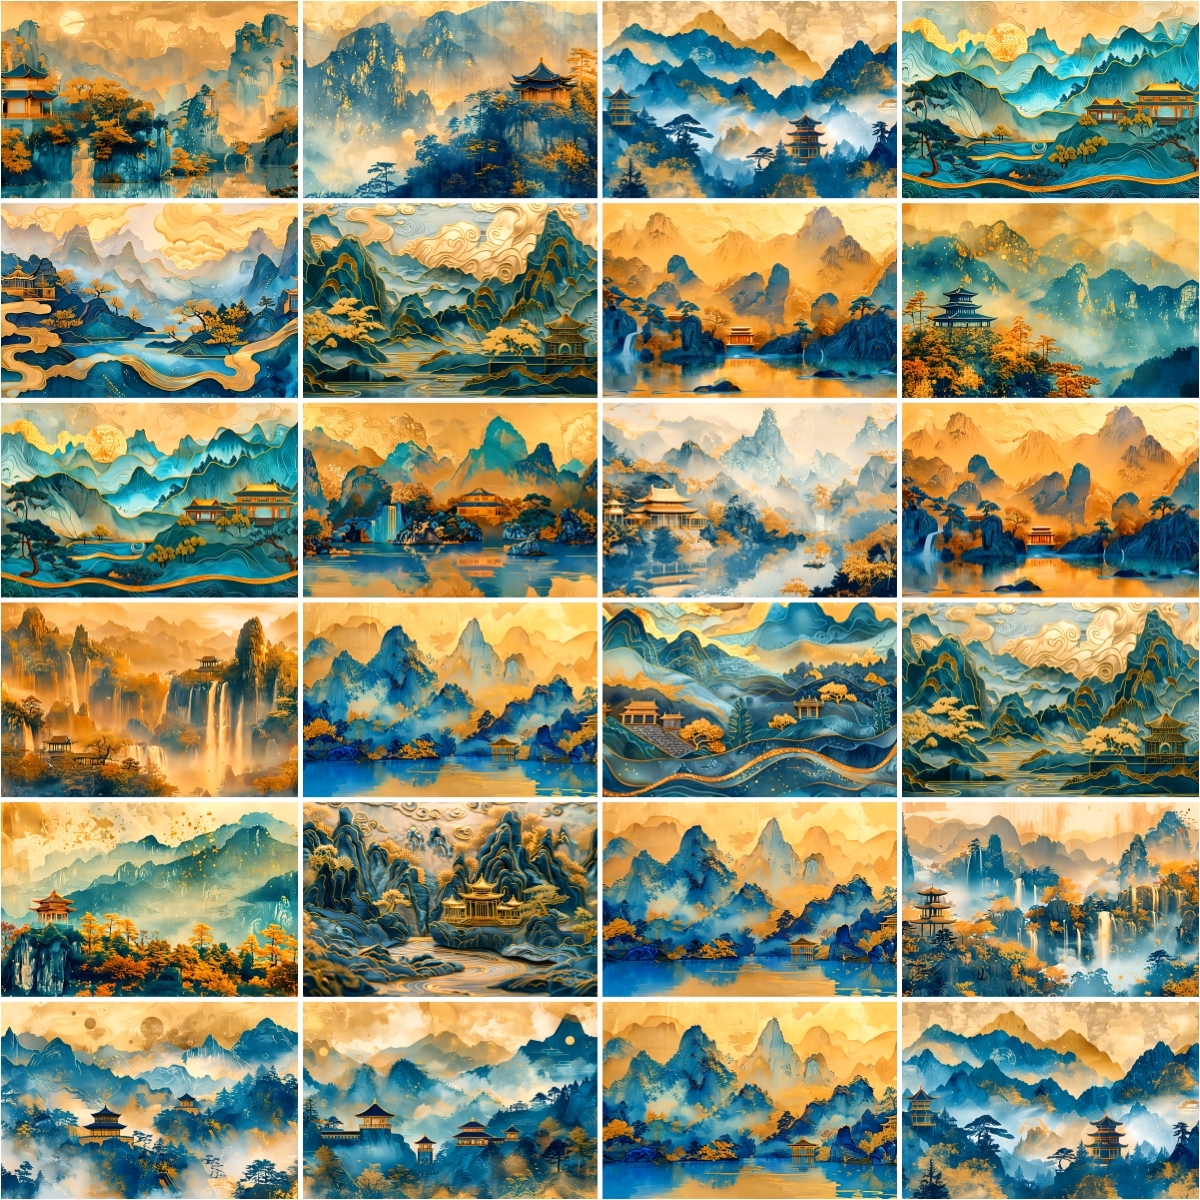 鎏金中国山水画手绘千里江山古风背景